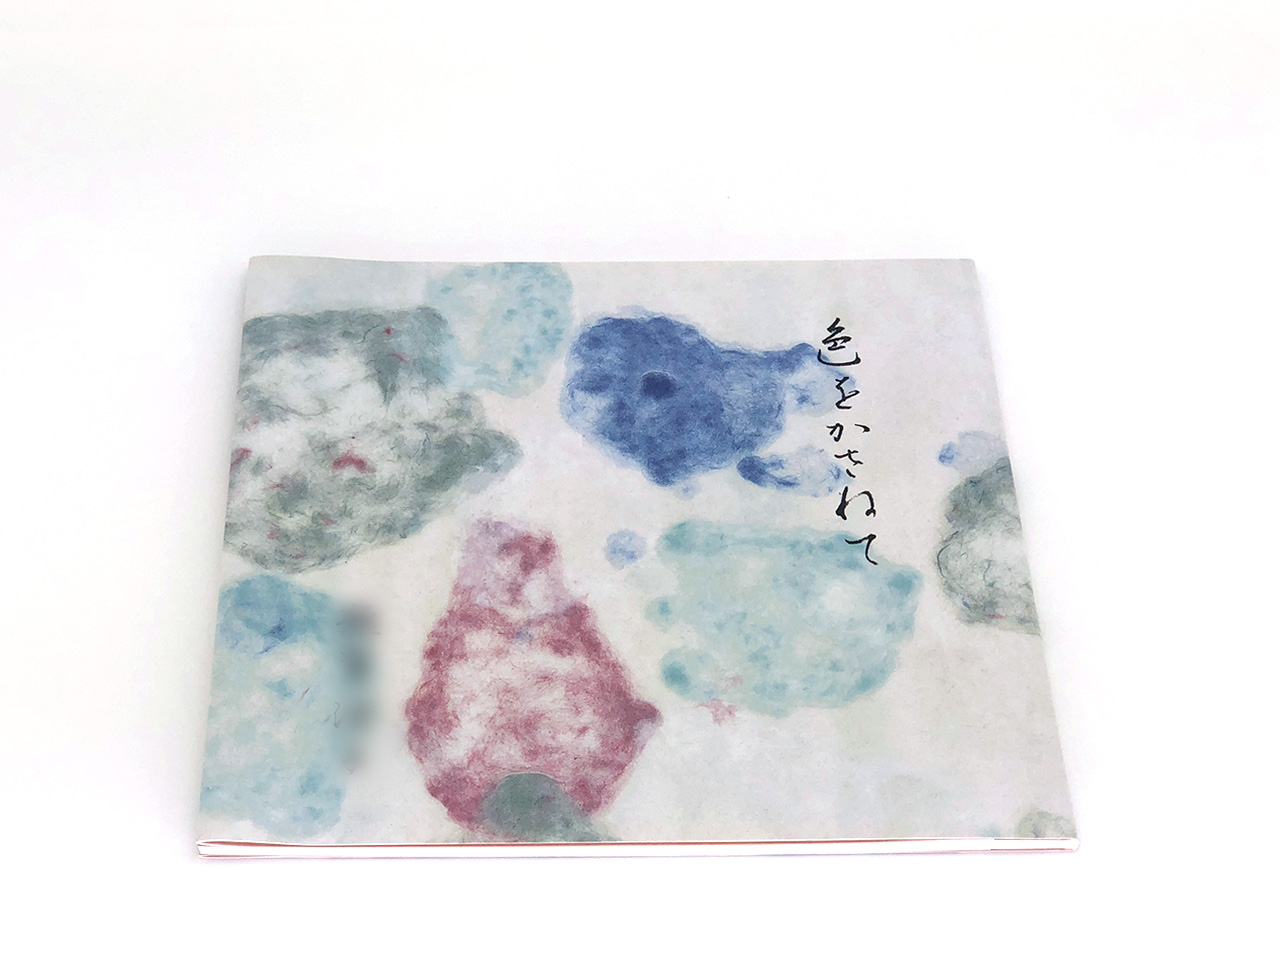 日本画風紙画・継紙作品集「色をかさねて」表紙